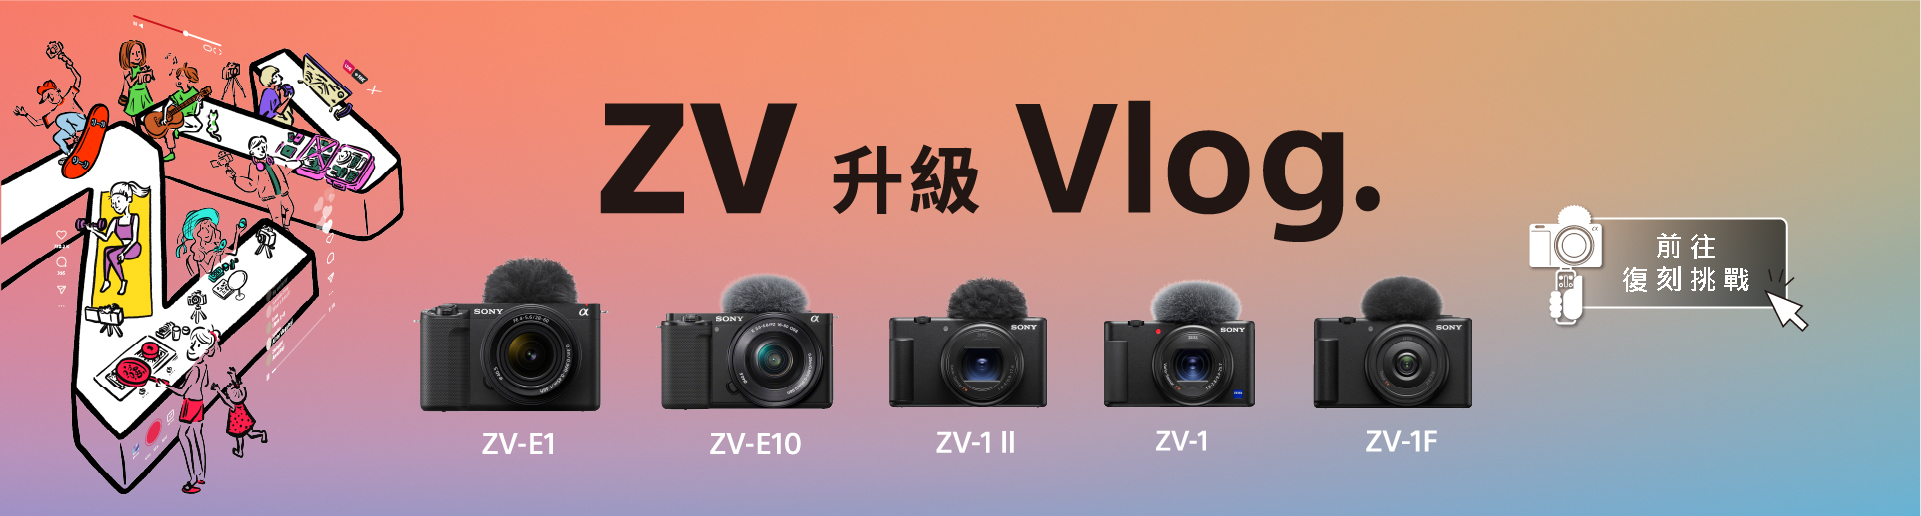 ZV 升級 Vlog.